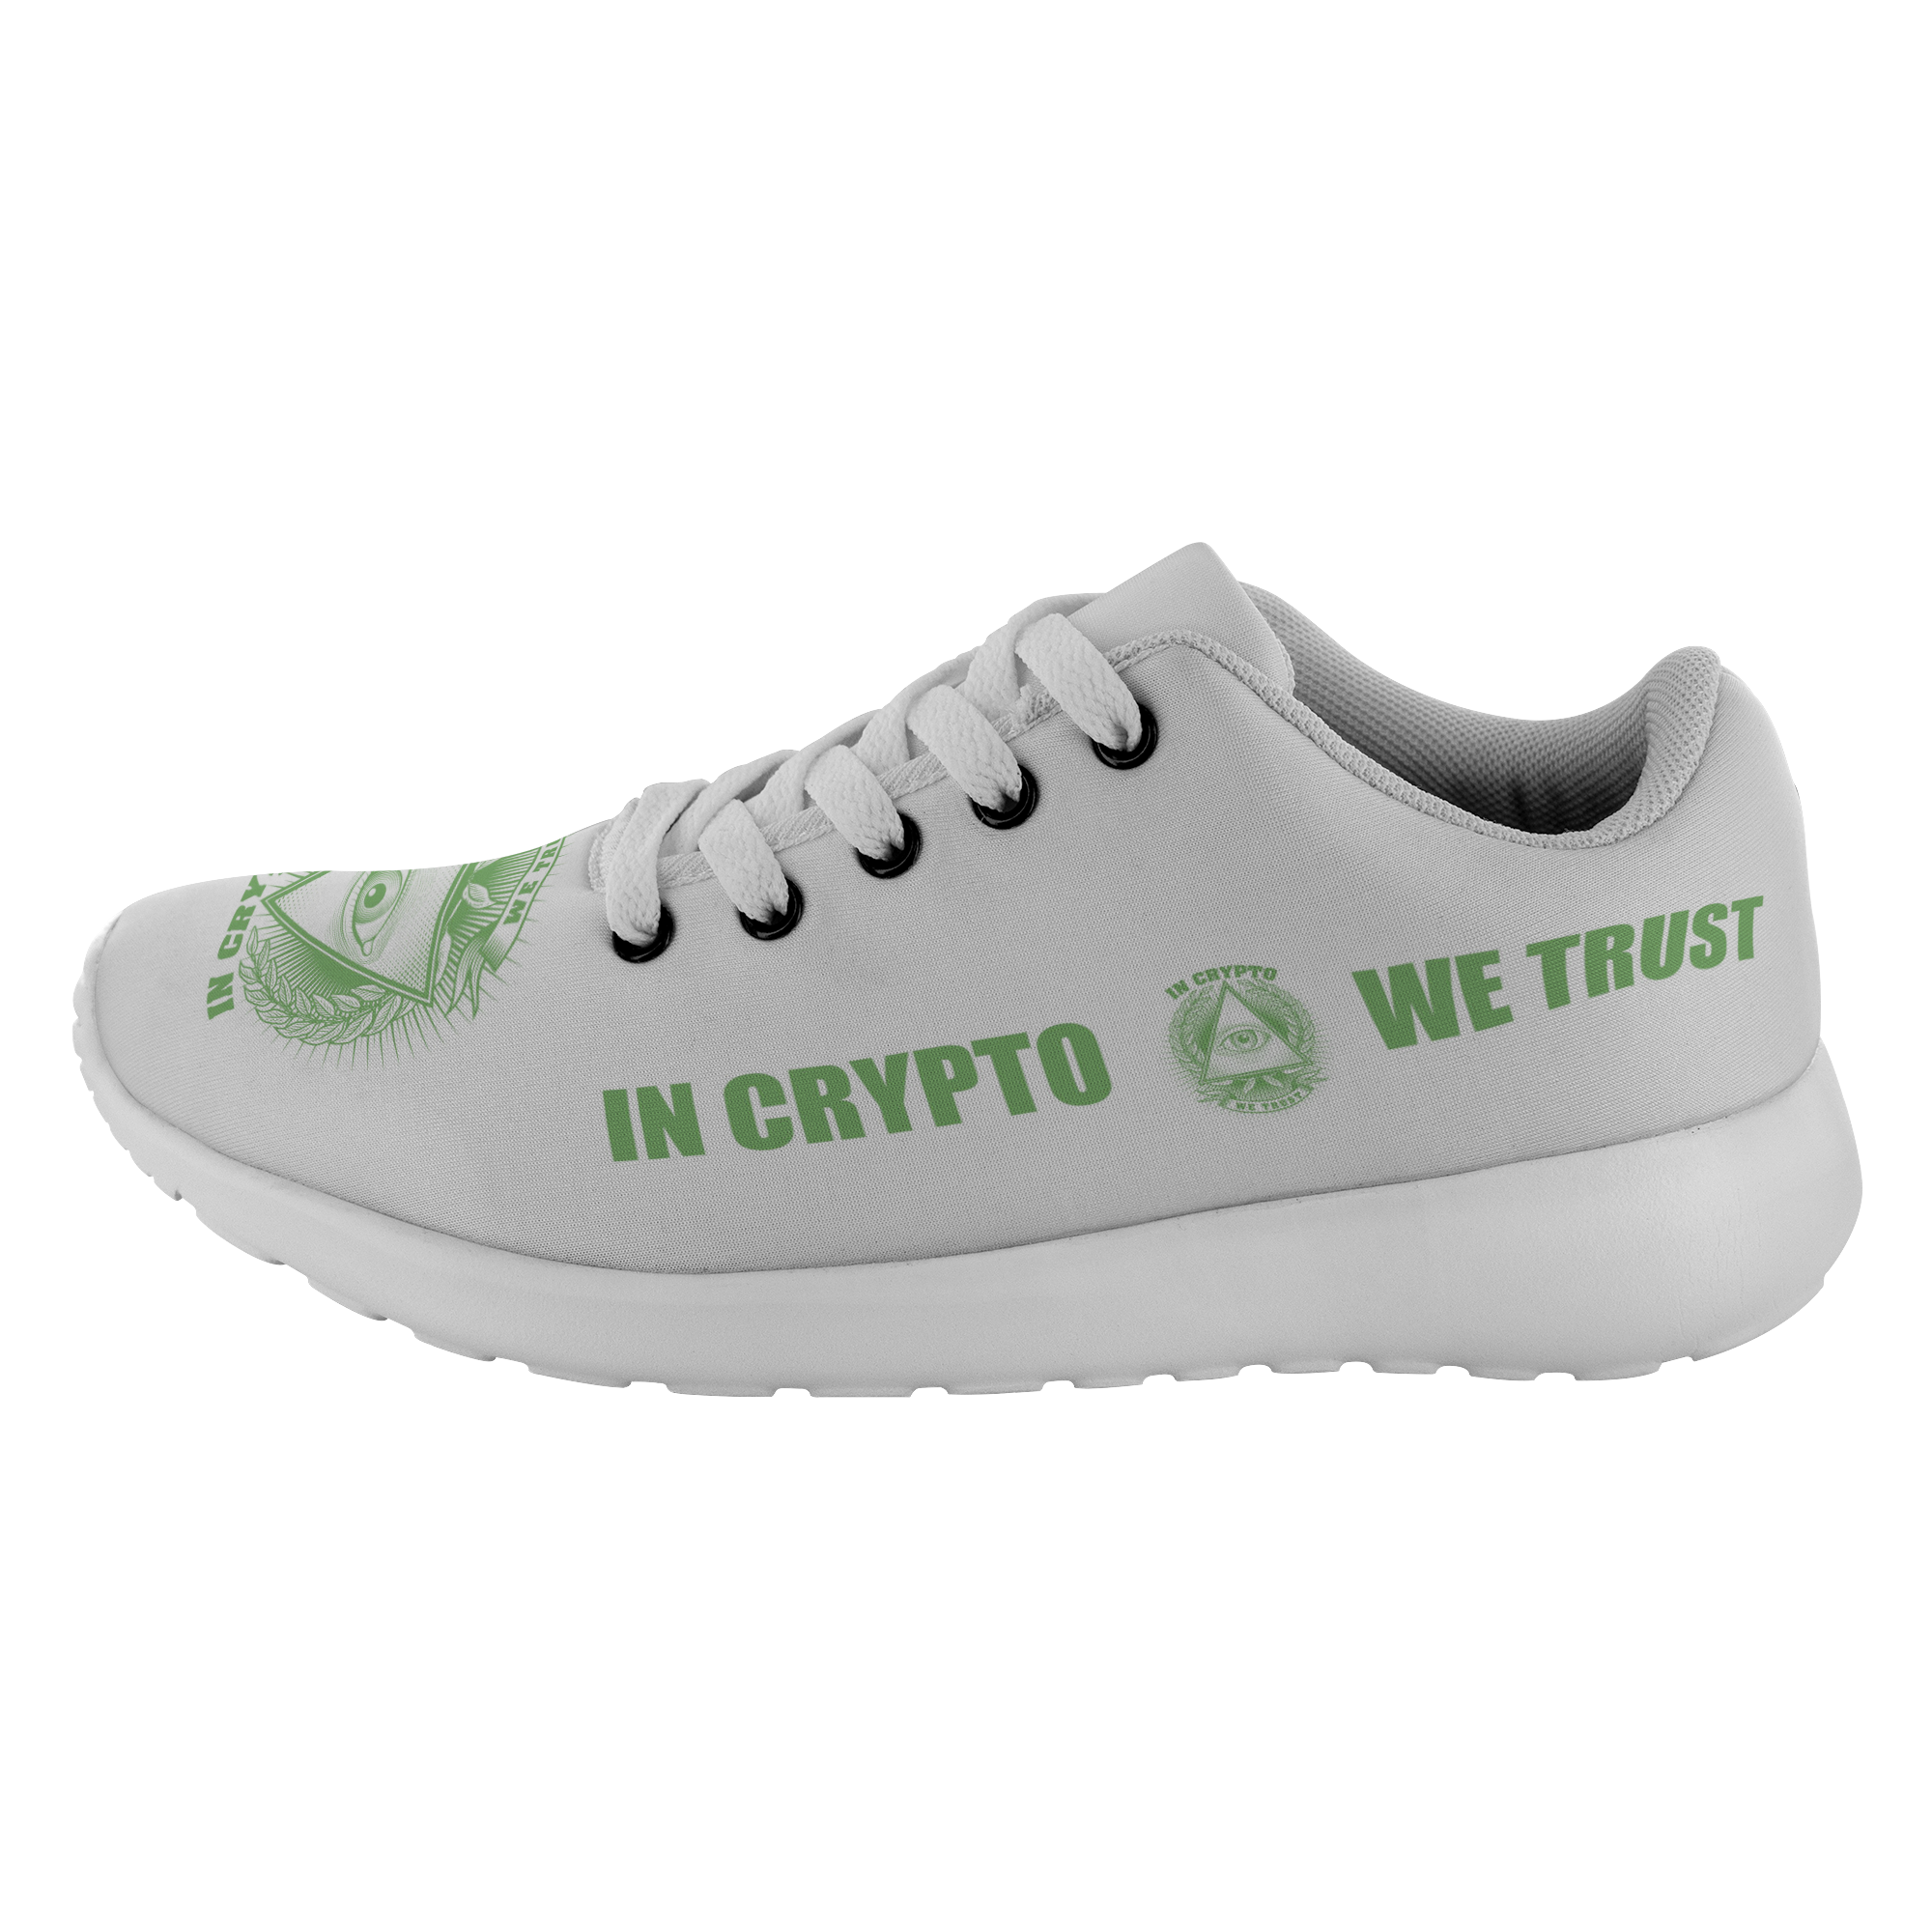 Zapatillas para correr: en Crypto confiamos